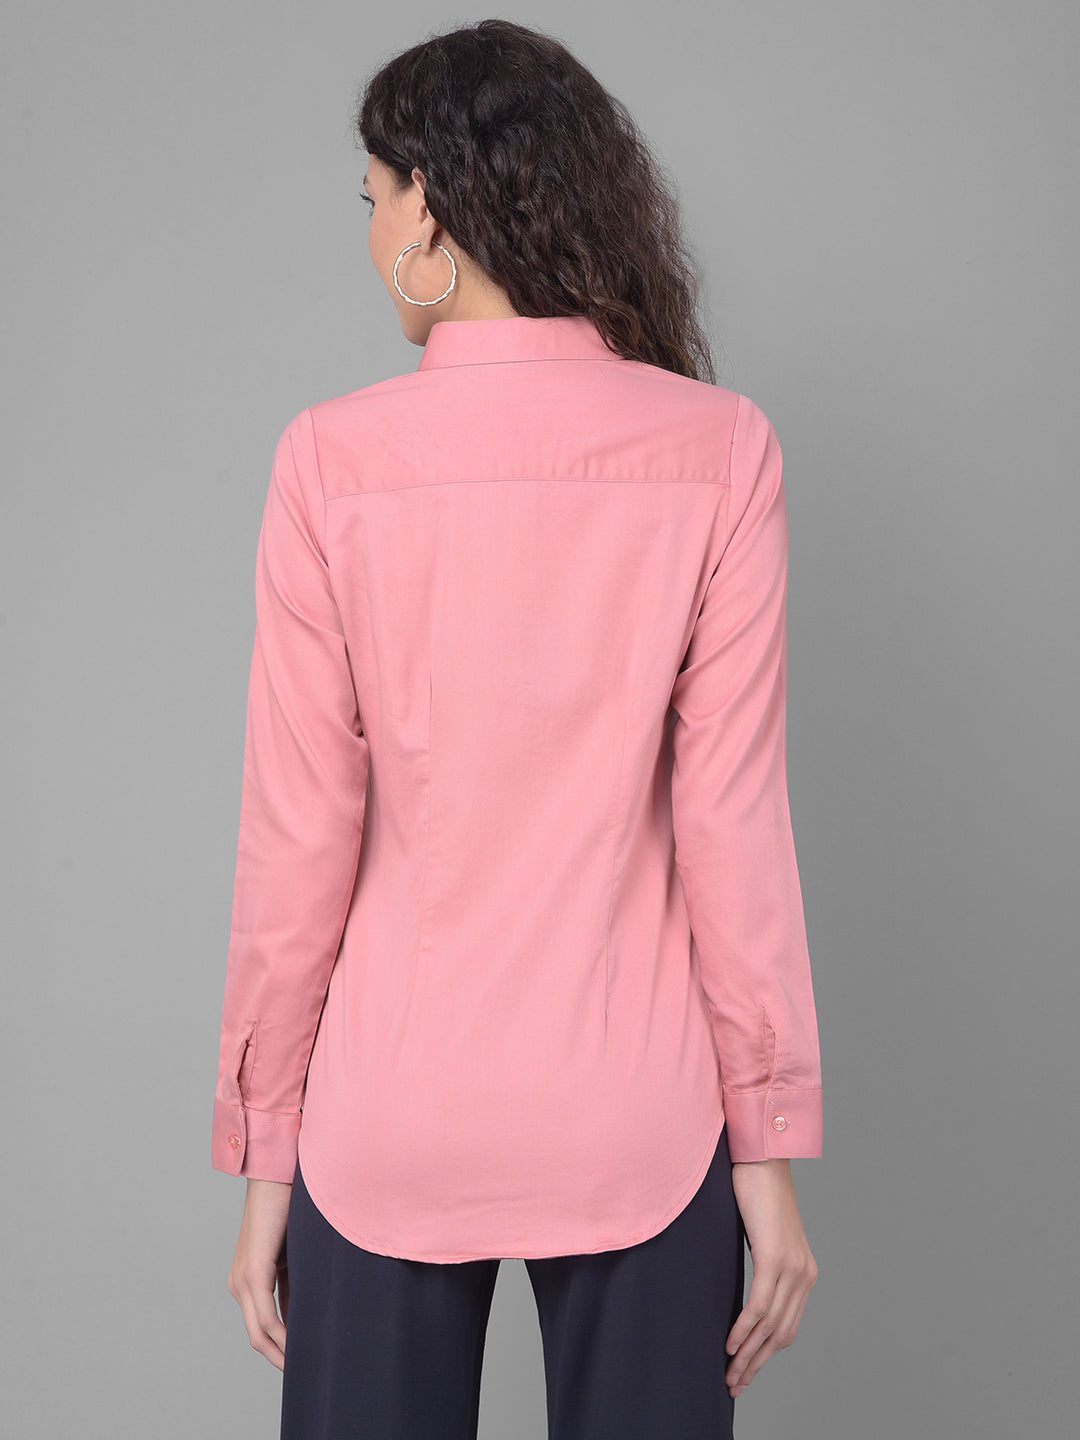 Pink Shirt-Women Shirts-Crimsoune Club